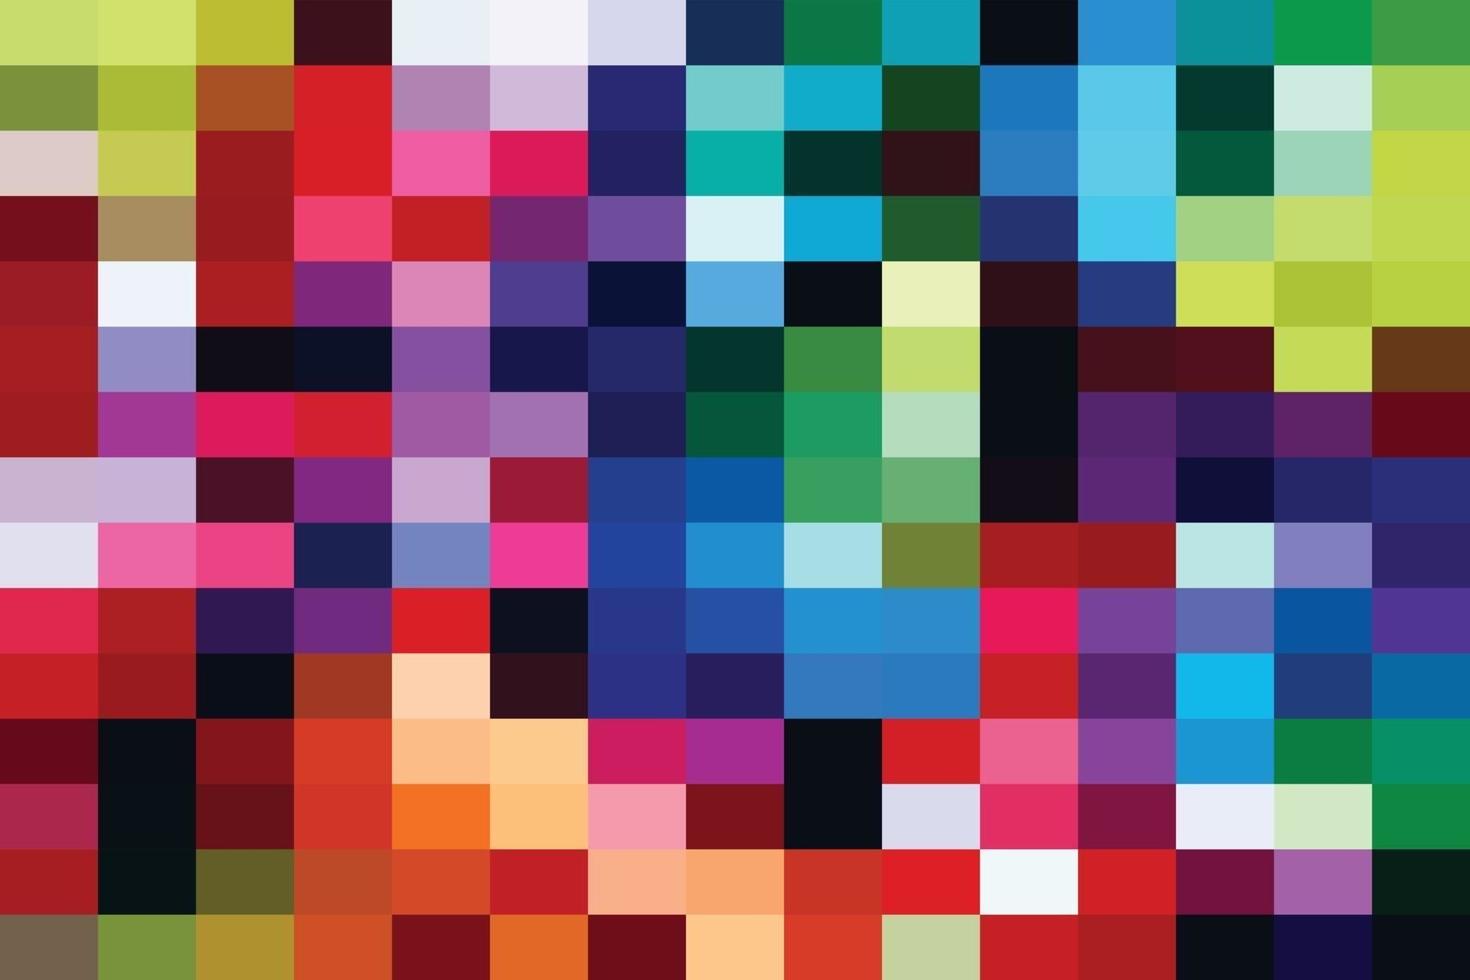 Regenbogen-Mosaik-Hintergrund vektor